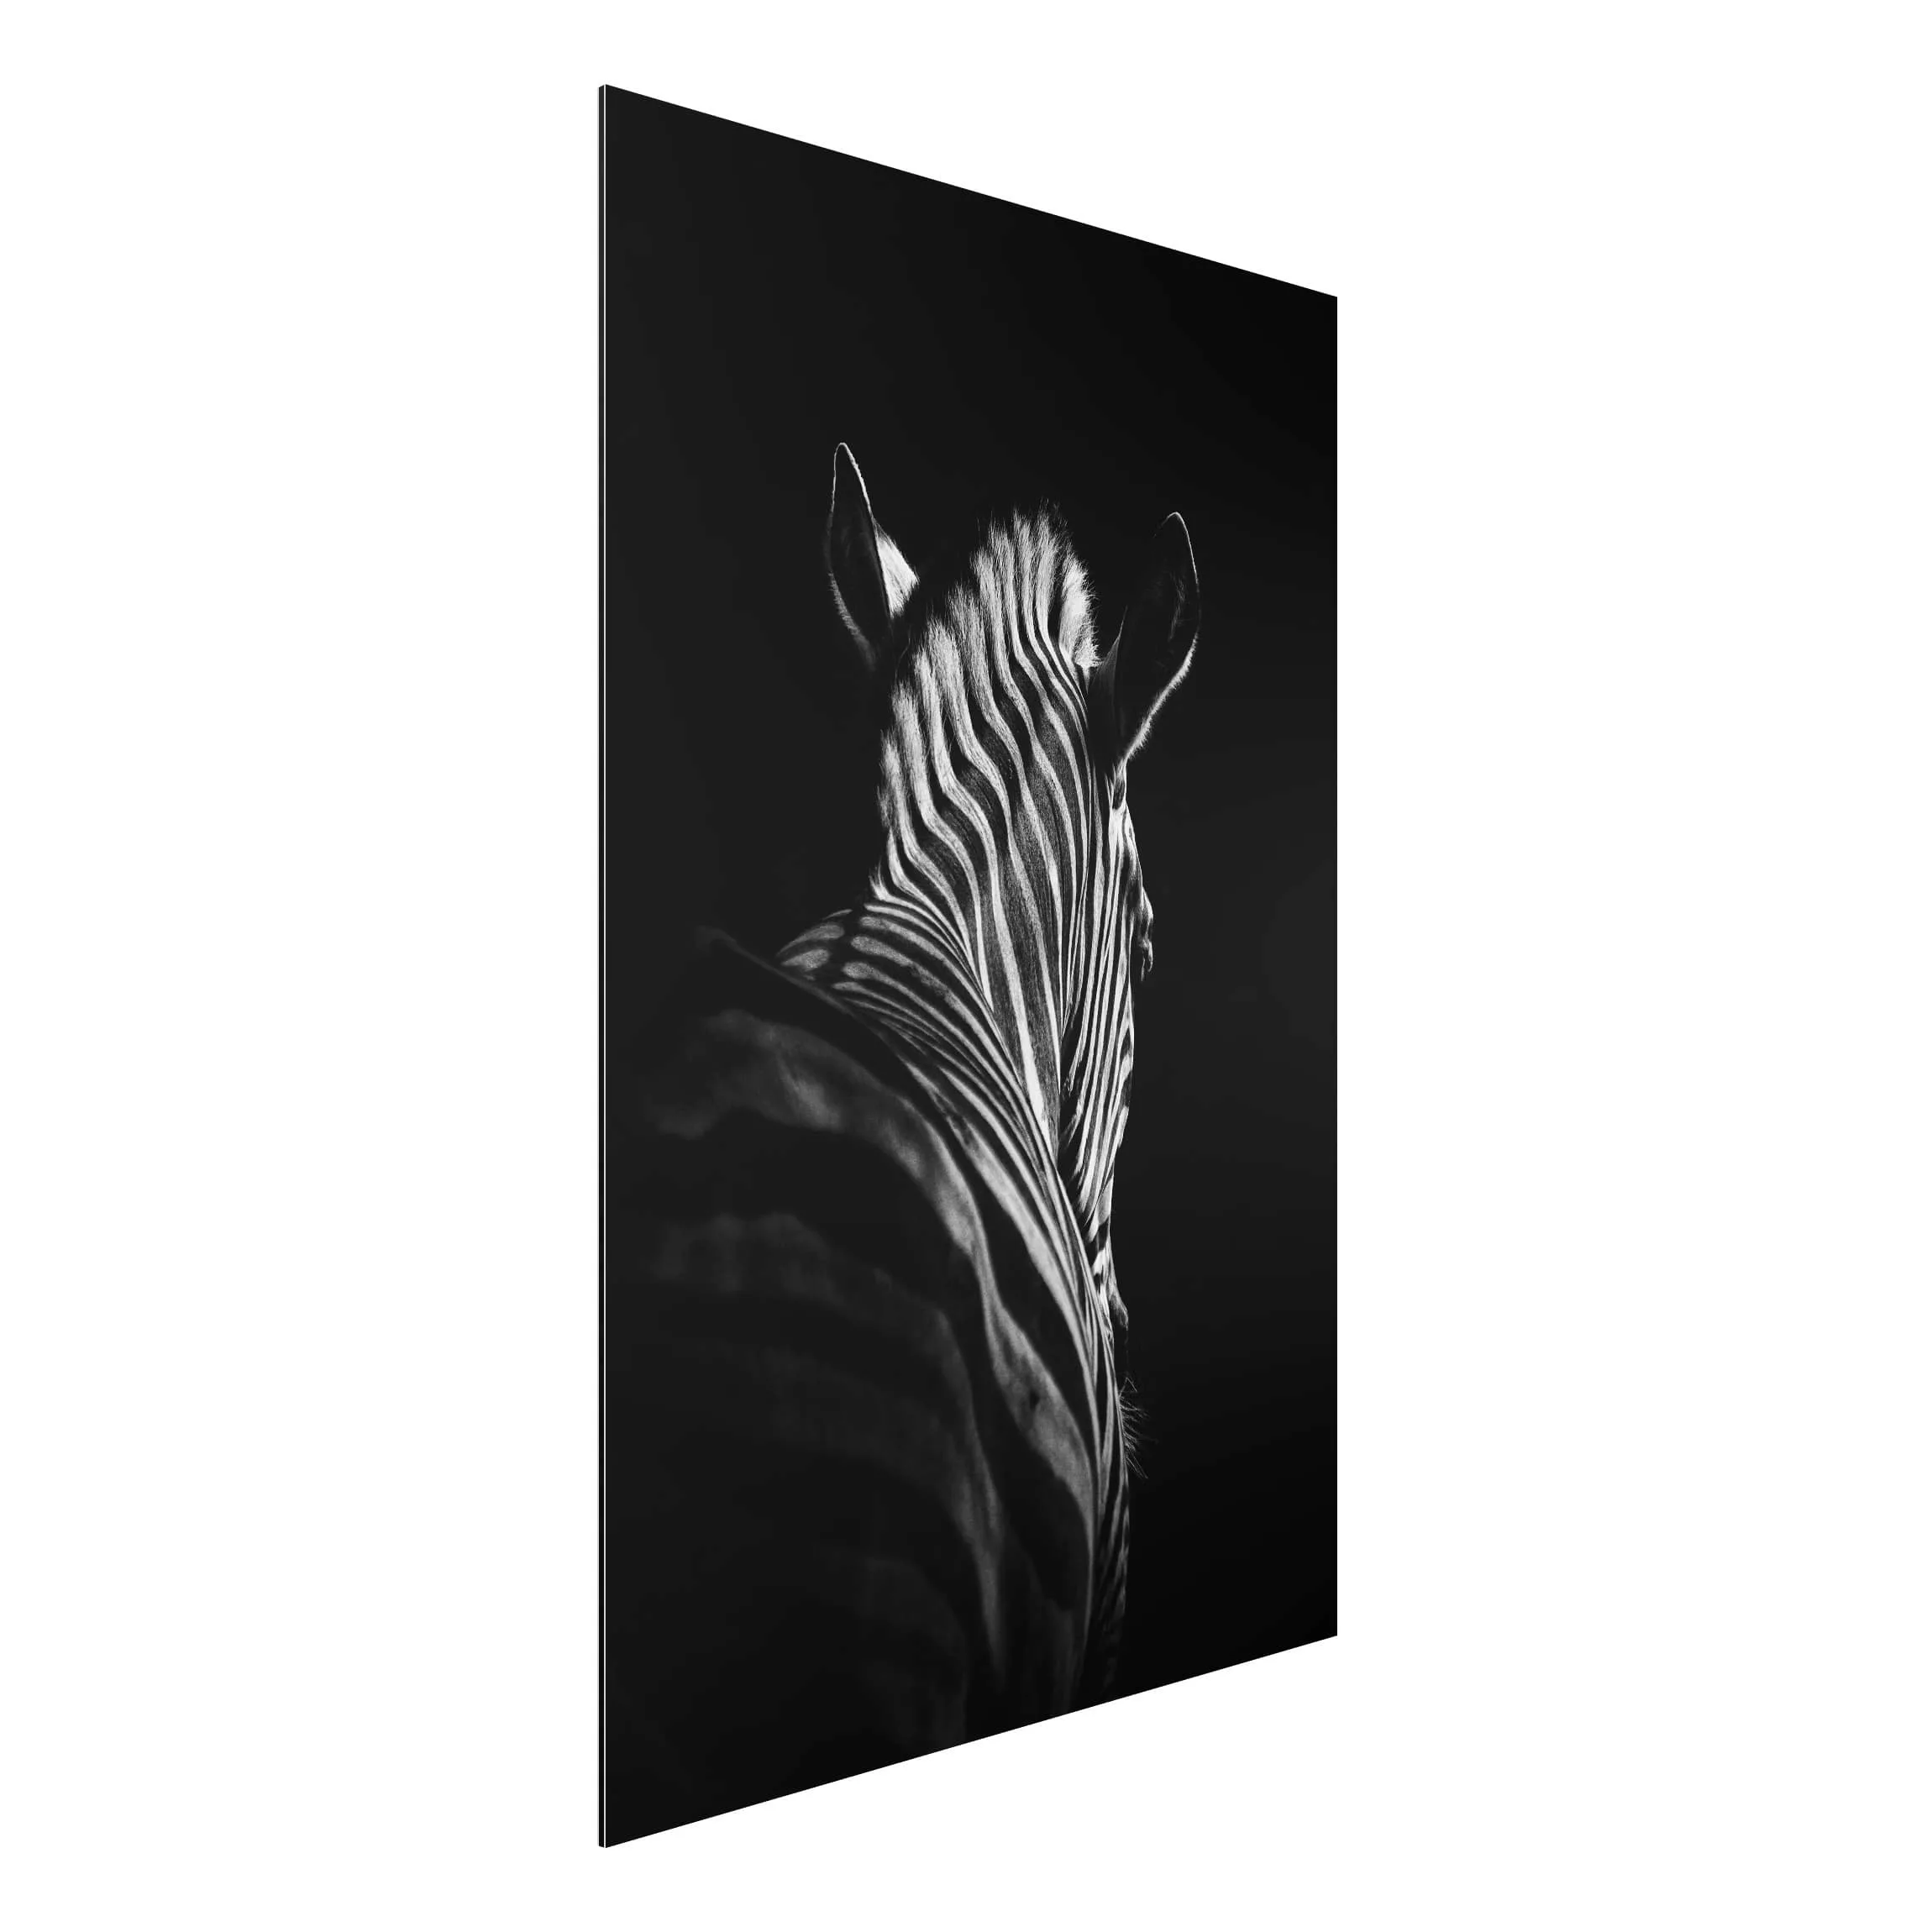 Alu-Dibond Bild Schwarz-Weiß - Hochformat 2:3 Dunkle Zebra Silhouette günstig online kaufen